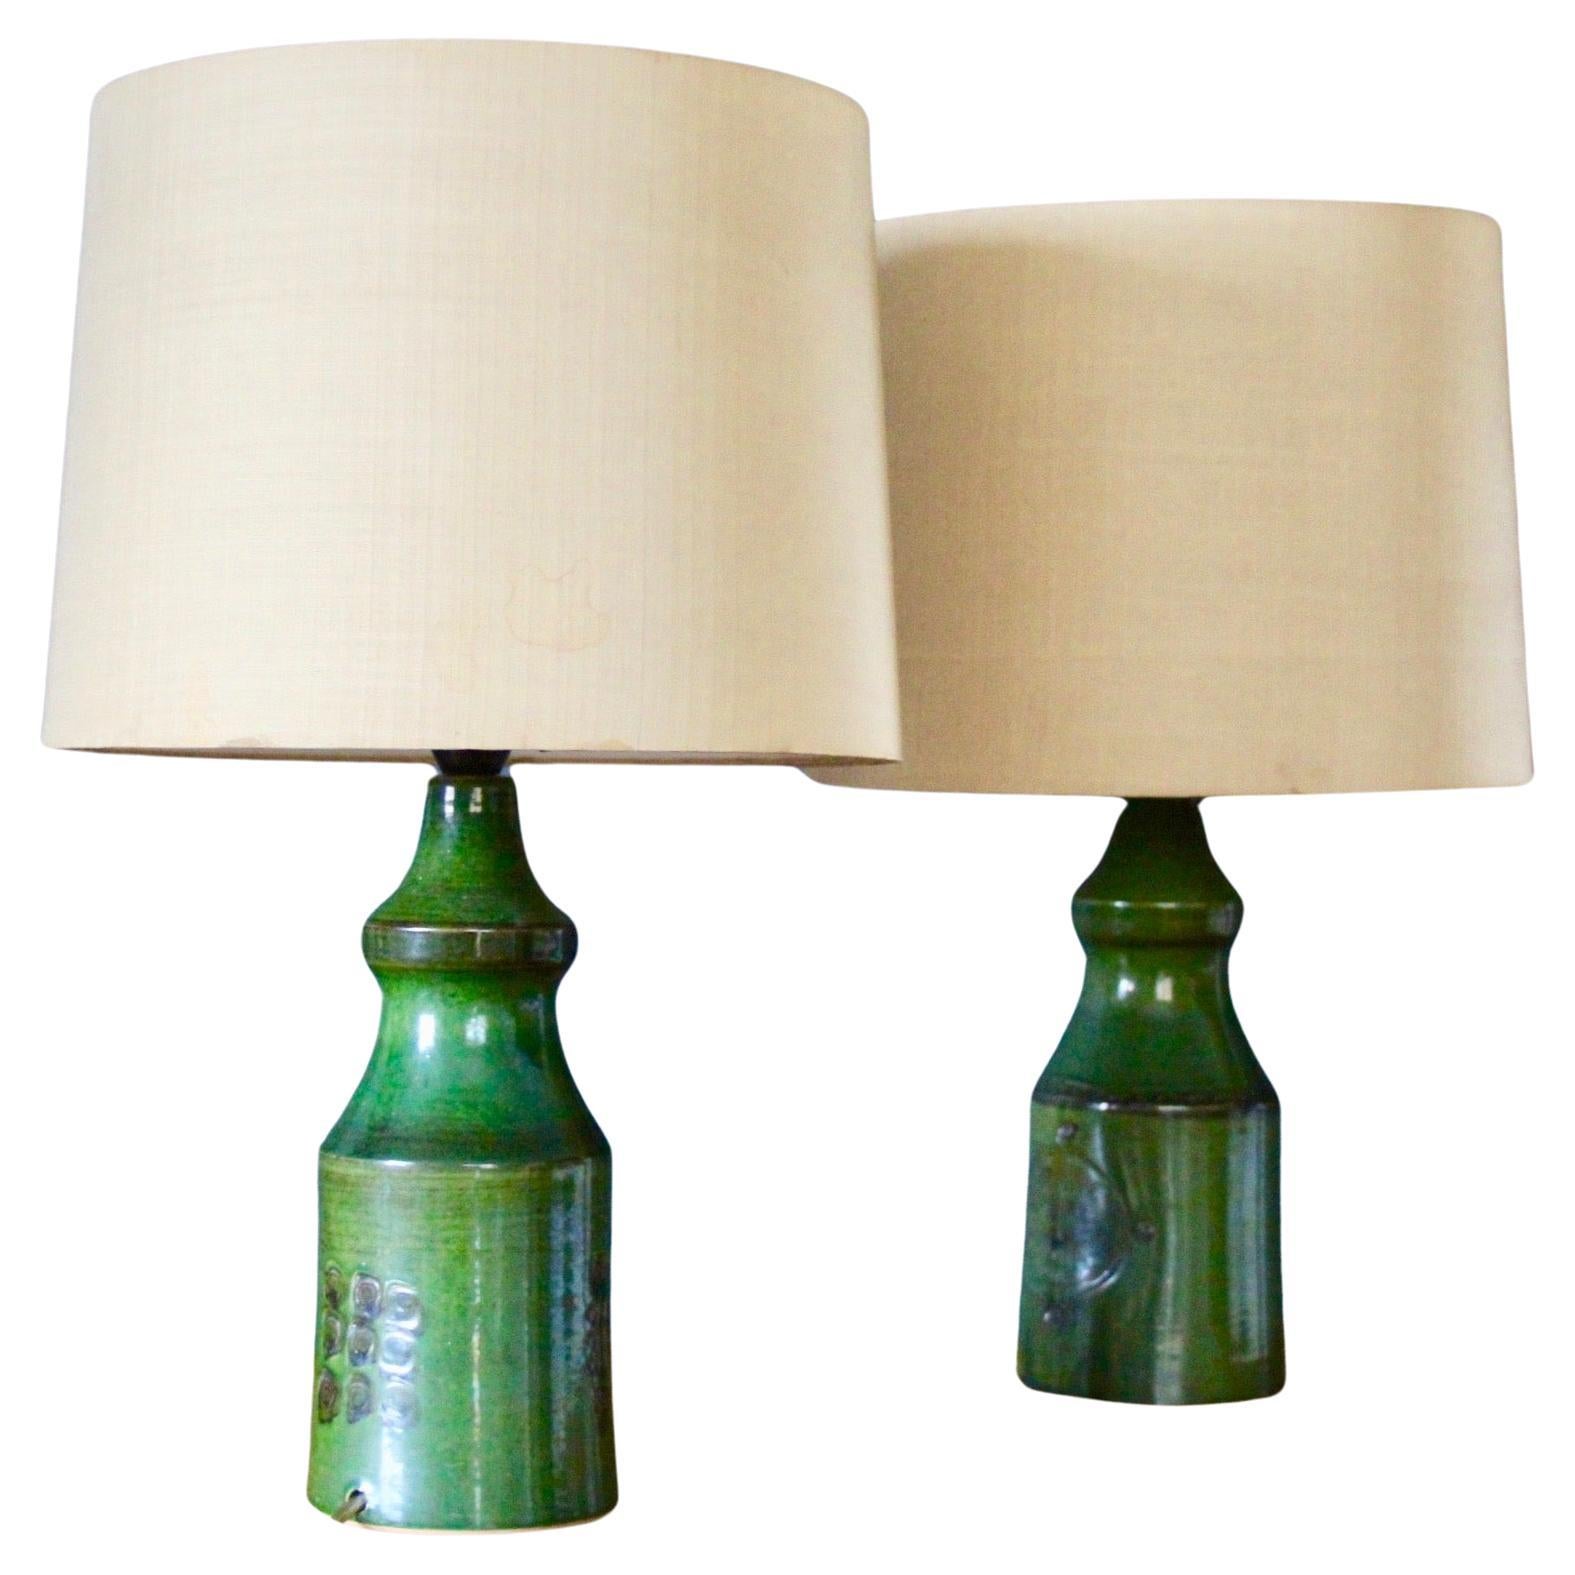 Pair of green ceramic danish table lamp For Sale